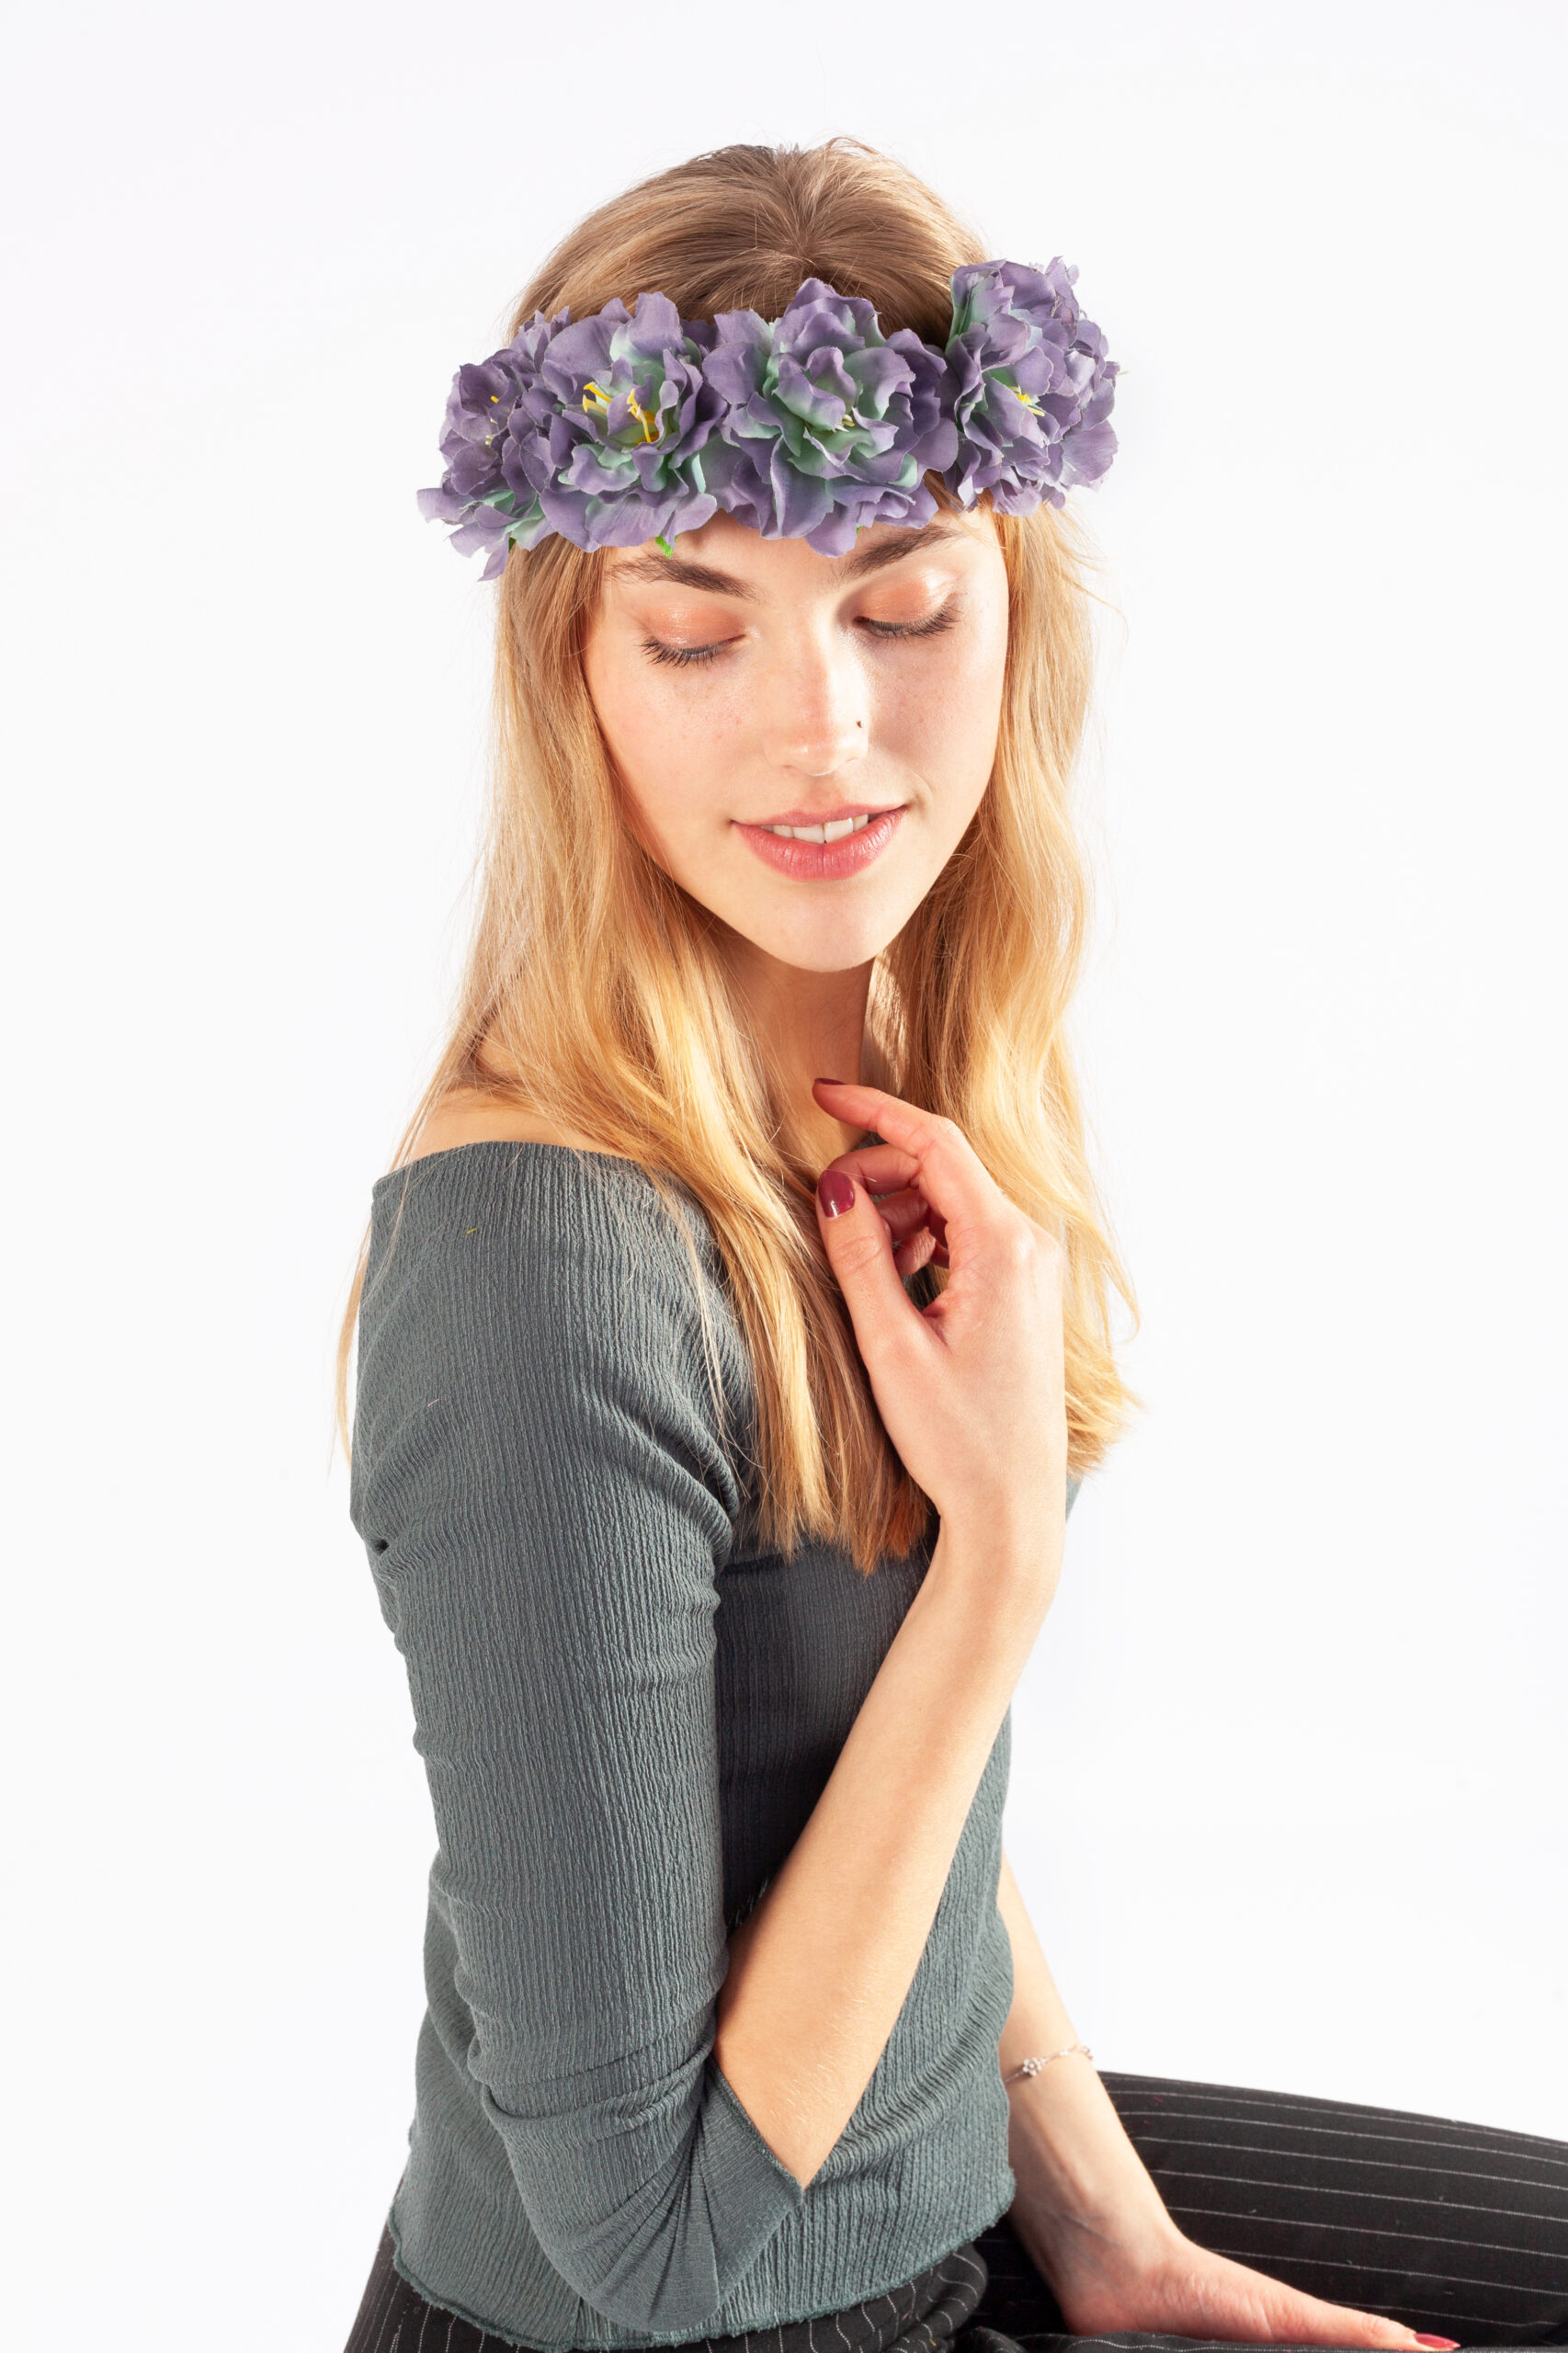 Doorzichtig spoel Hoofdstraat Bloemenkrans haar hawaii paars bloemen haarband kopen? - FeestinjeBeest.nl